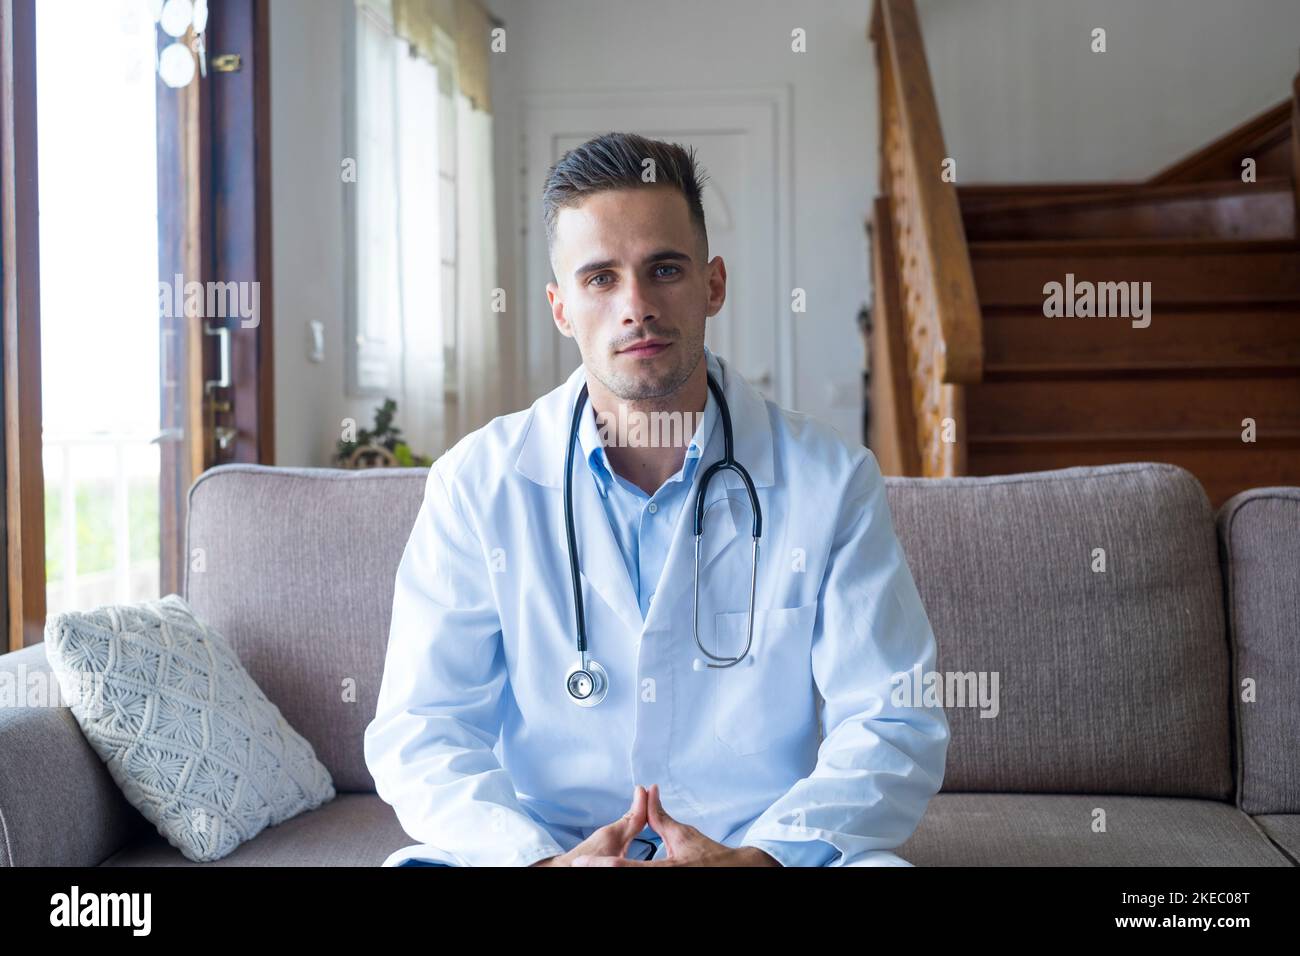 Arzt, Hausarzt konsultieren den Patienten online per Videoanruf. Porträt eines hübschen kaukasischen Mannes, der die Kamera anschaut. Gesundheitsarbeiter Beratung Klinik Patienten Stockfoto